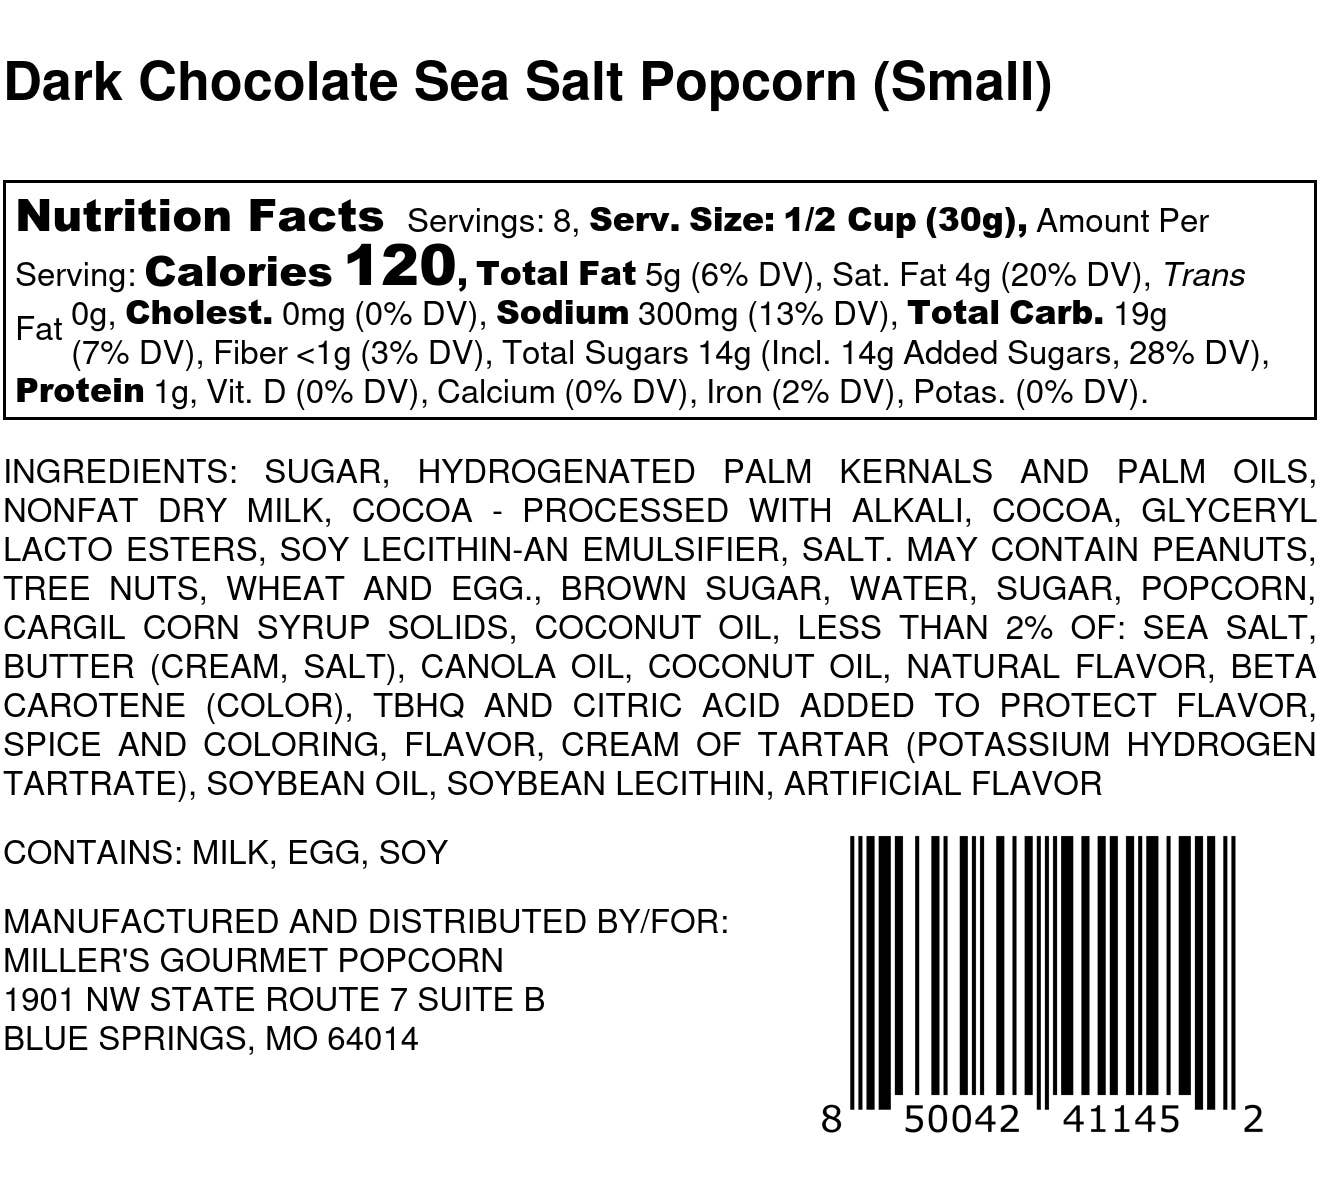 Dark Chocolate Sea Salt Popcorn